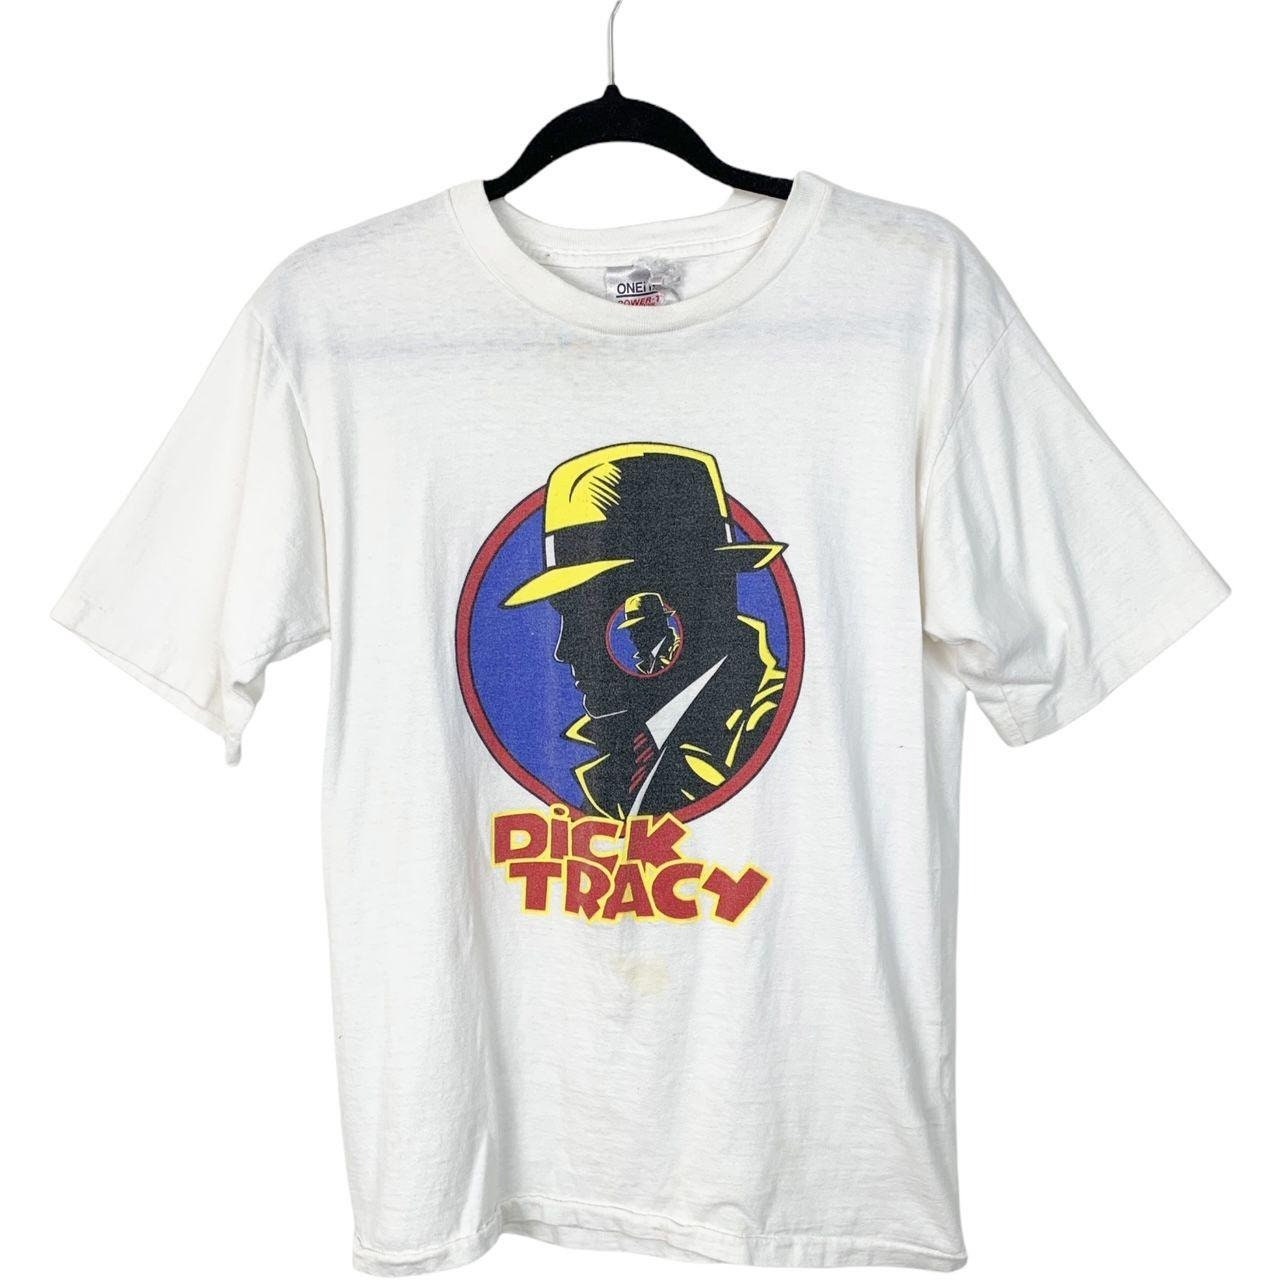 Dick Tracy T Shirt - Etsy